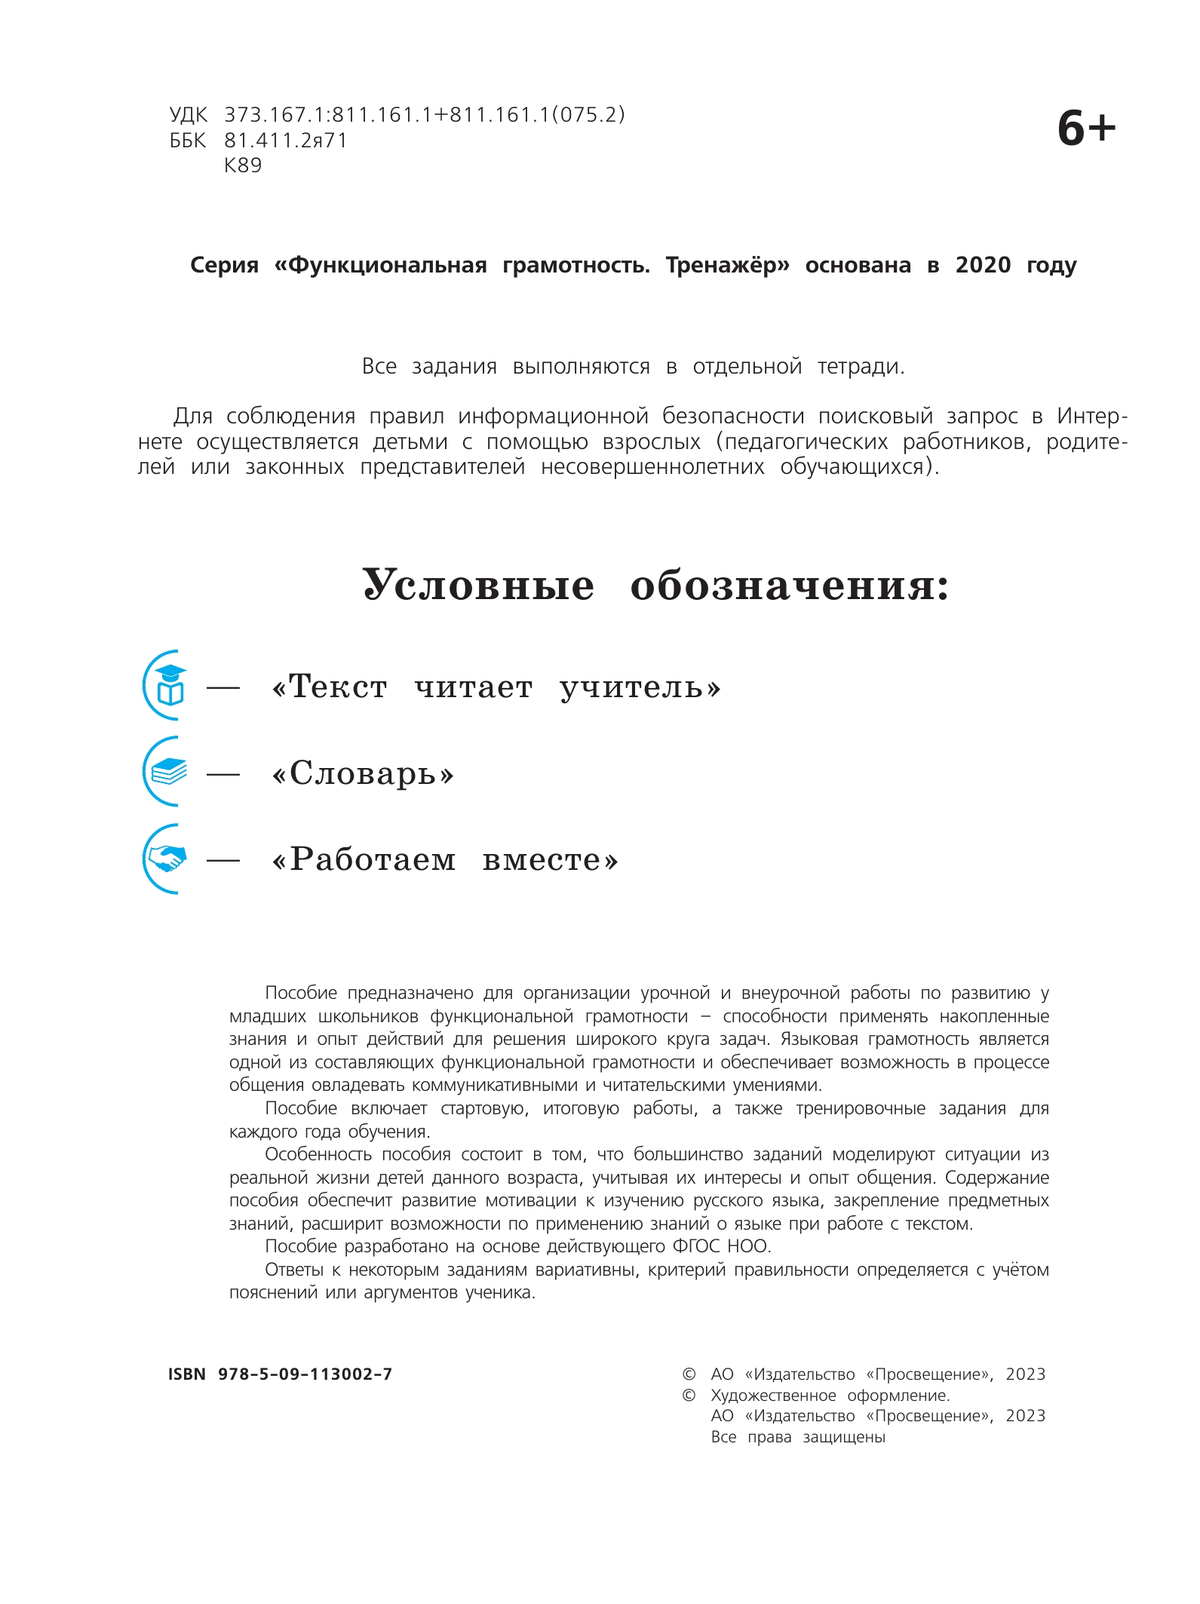 Языковая грамотность. Русский язык. Развитие. Диагностика. 1-2 классы 8